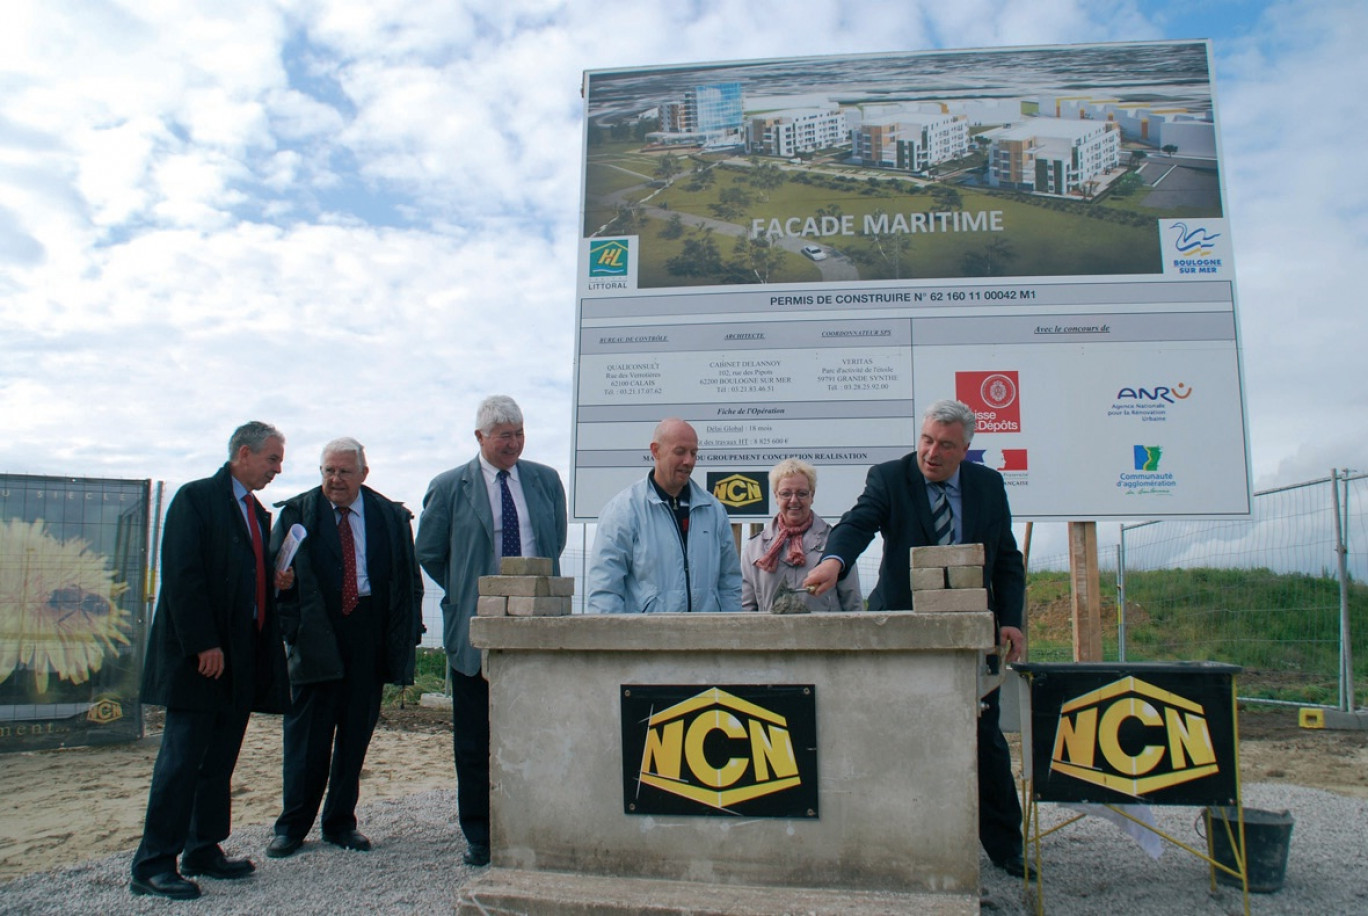 La première pierre a été posée par le ministre Frédéric Cuvillier le 4 juin. Le chantier devrait durer 18 mois.